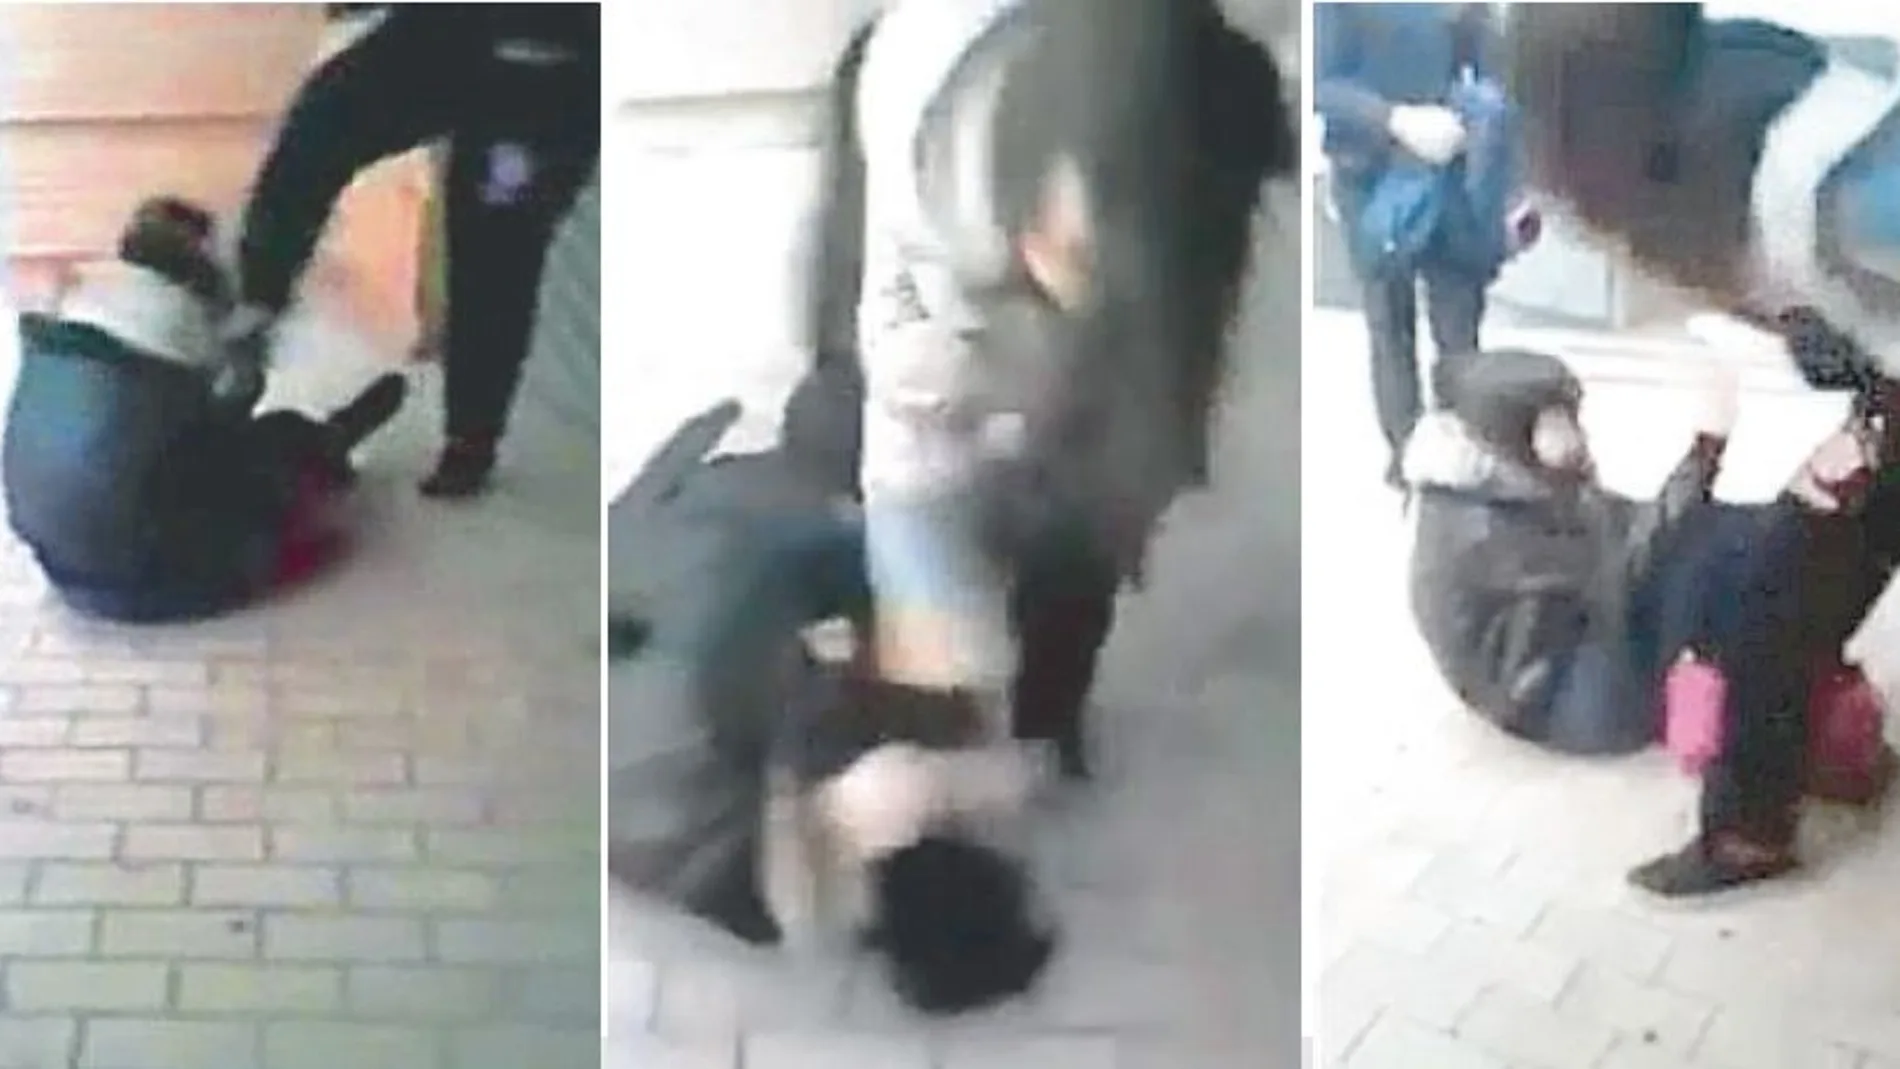 Vídeo difundido en internet de la paliza de una menor a otra en Sabadell (Barcelona) en febrero de 2014